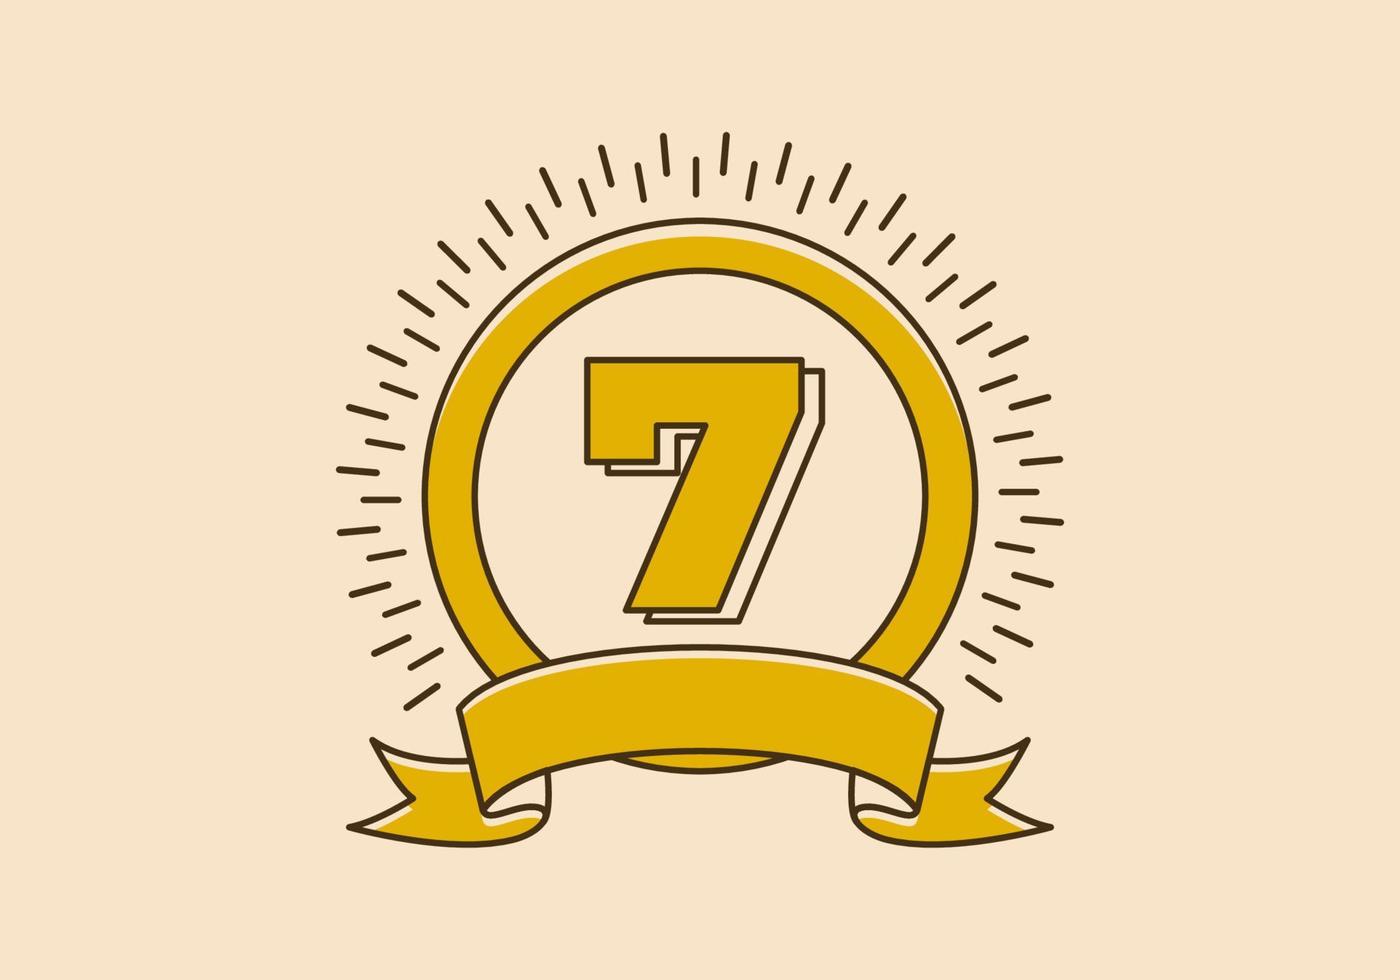 Vintage gelbes Kreisabzeichen mit der Nummer 7 darauf vektor